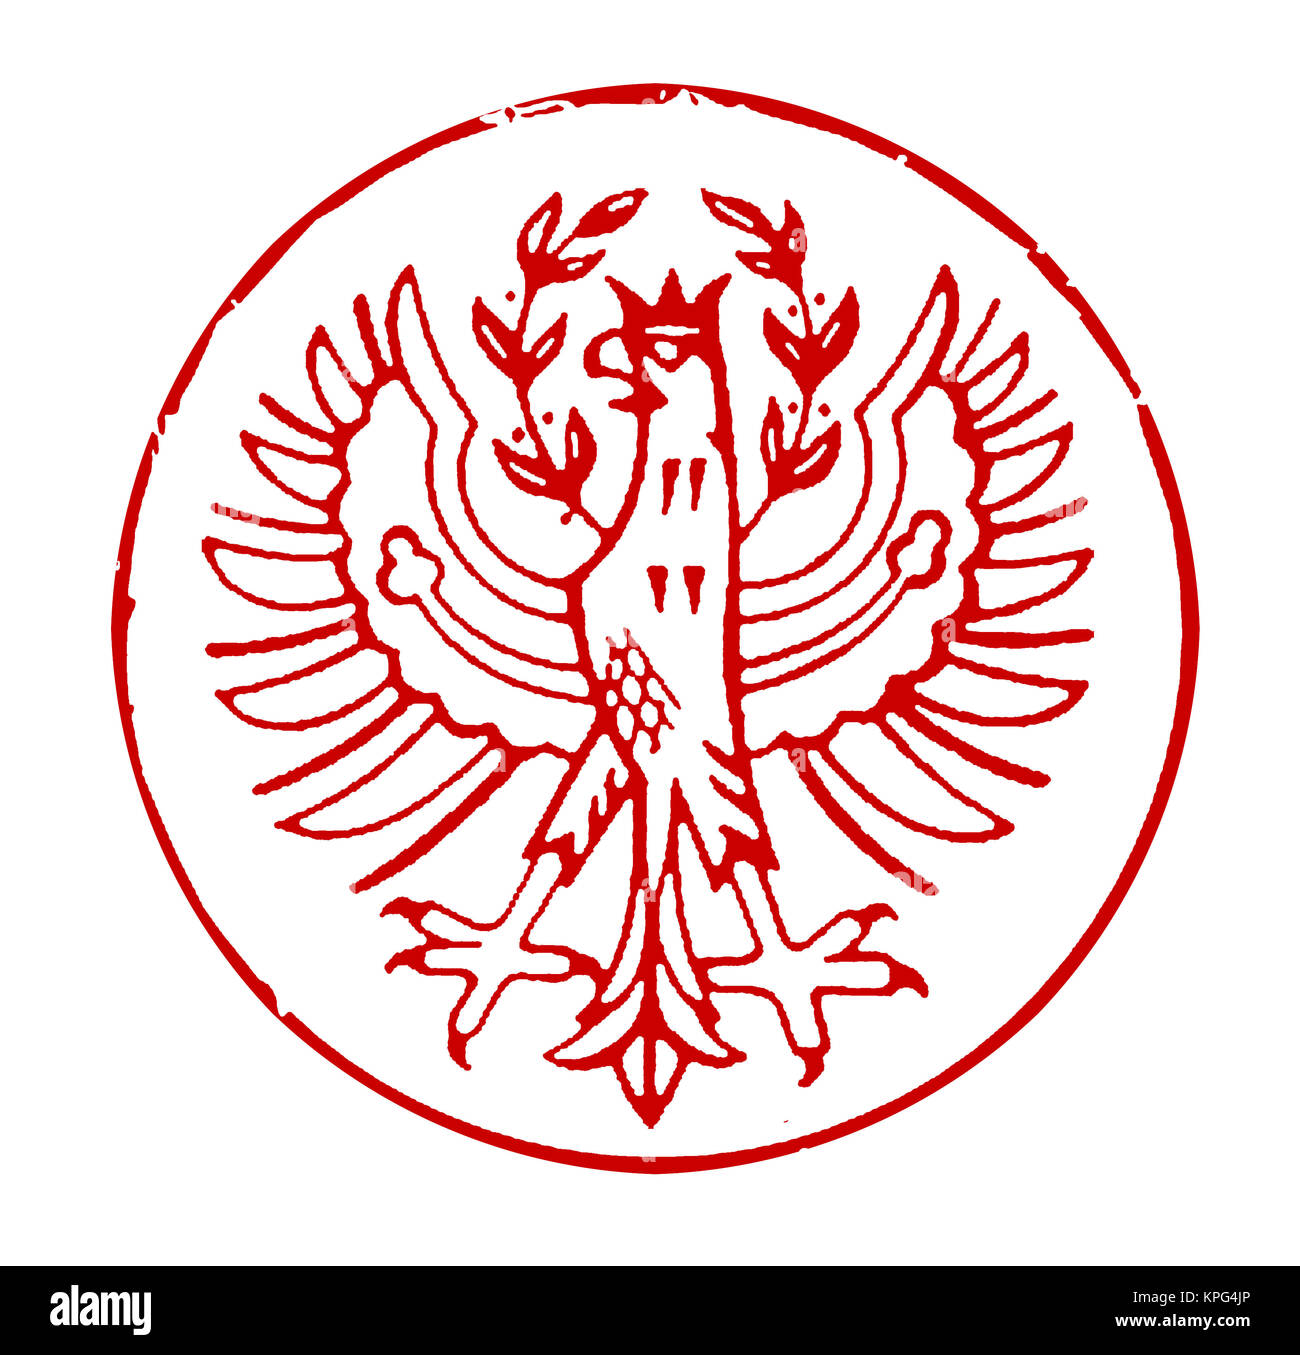 Poststempel mit dem Wappen von Südtirol (Italien) Foto Stock